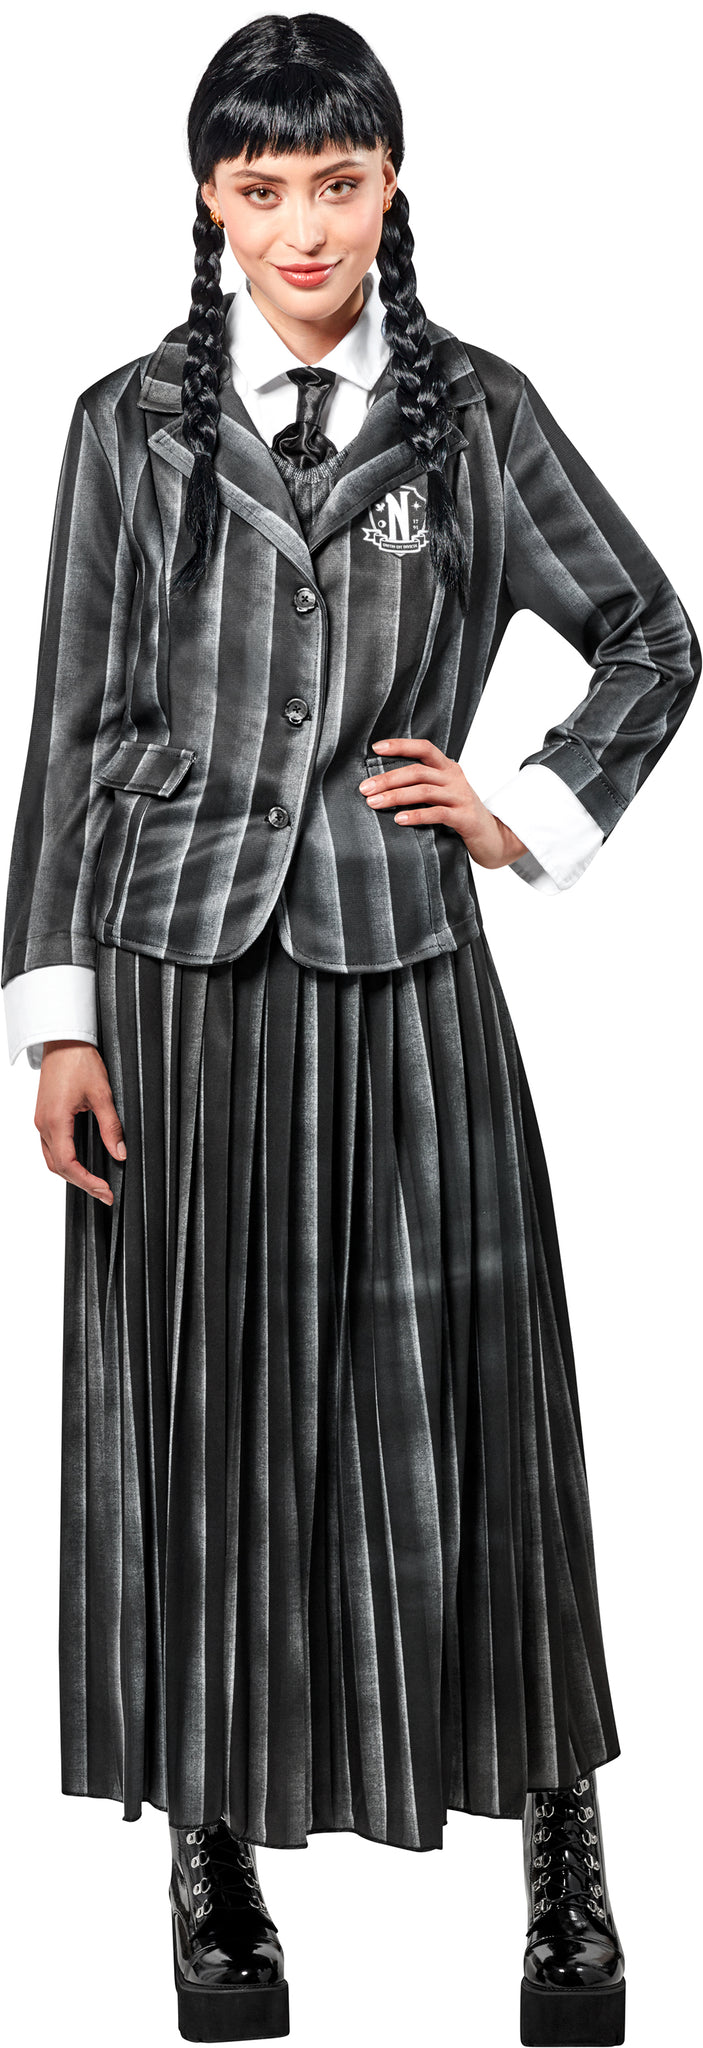 Adult Nevermore Uniform Costume - Wednesday